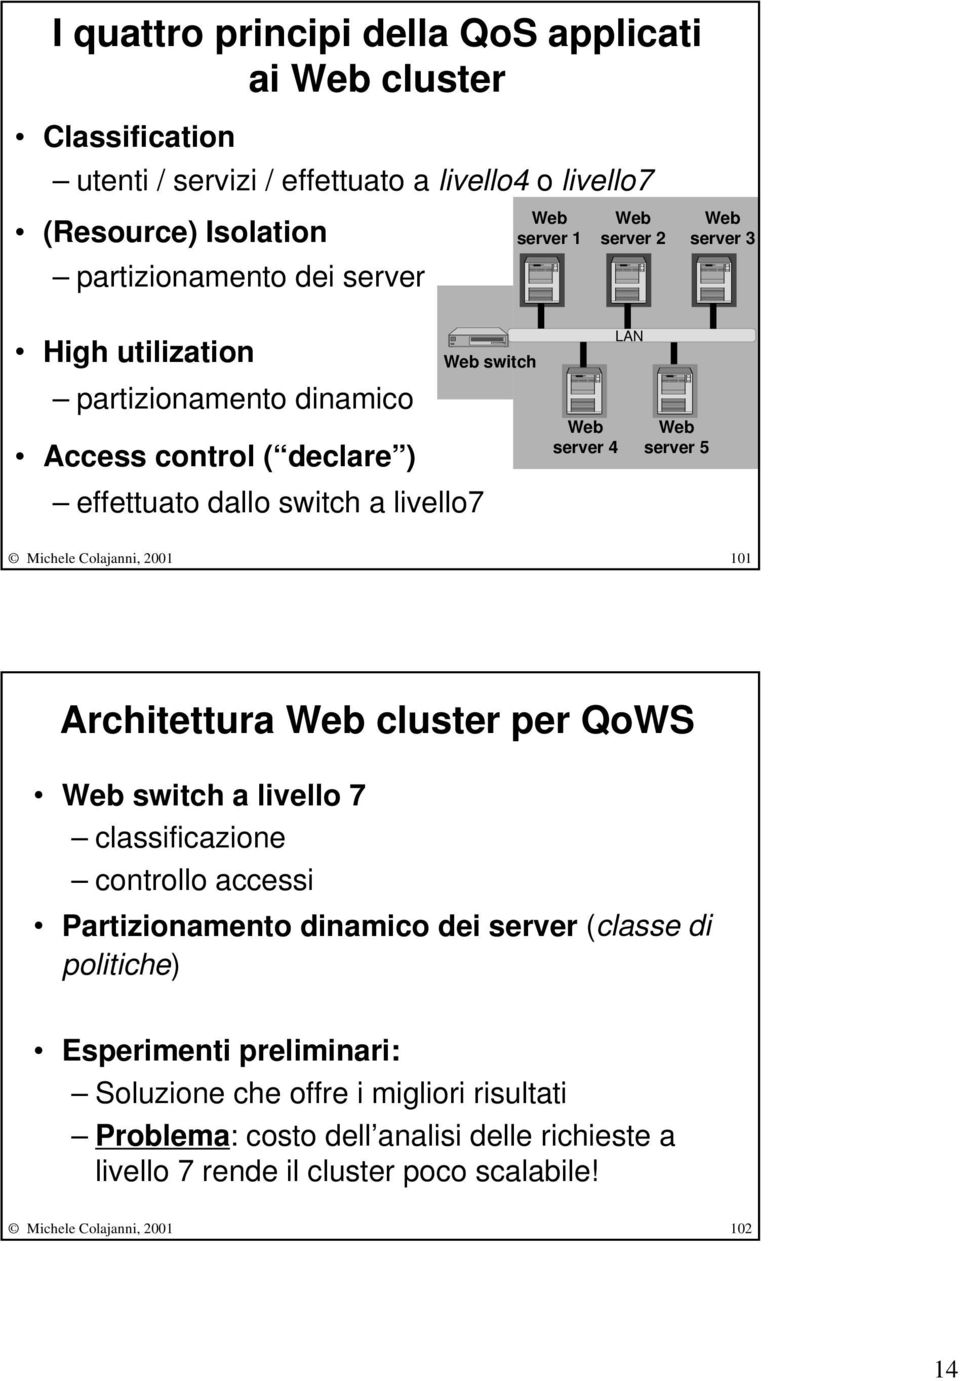 Michele Colajanni, 2001 101 Architettura Web cluster per QoWS Web switch a livello 7 classificazione controllo accessi Partizionamento dinamico dei server (classe di politiche)